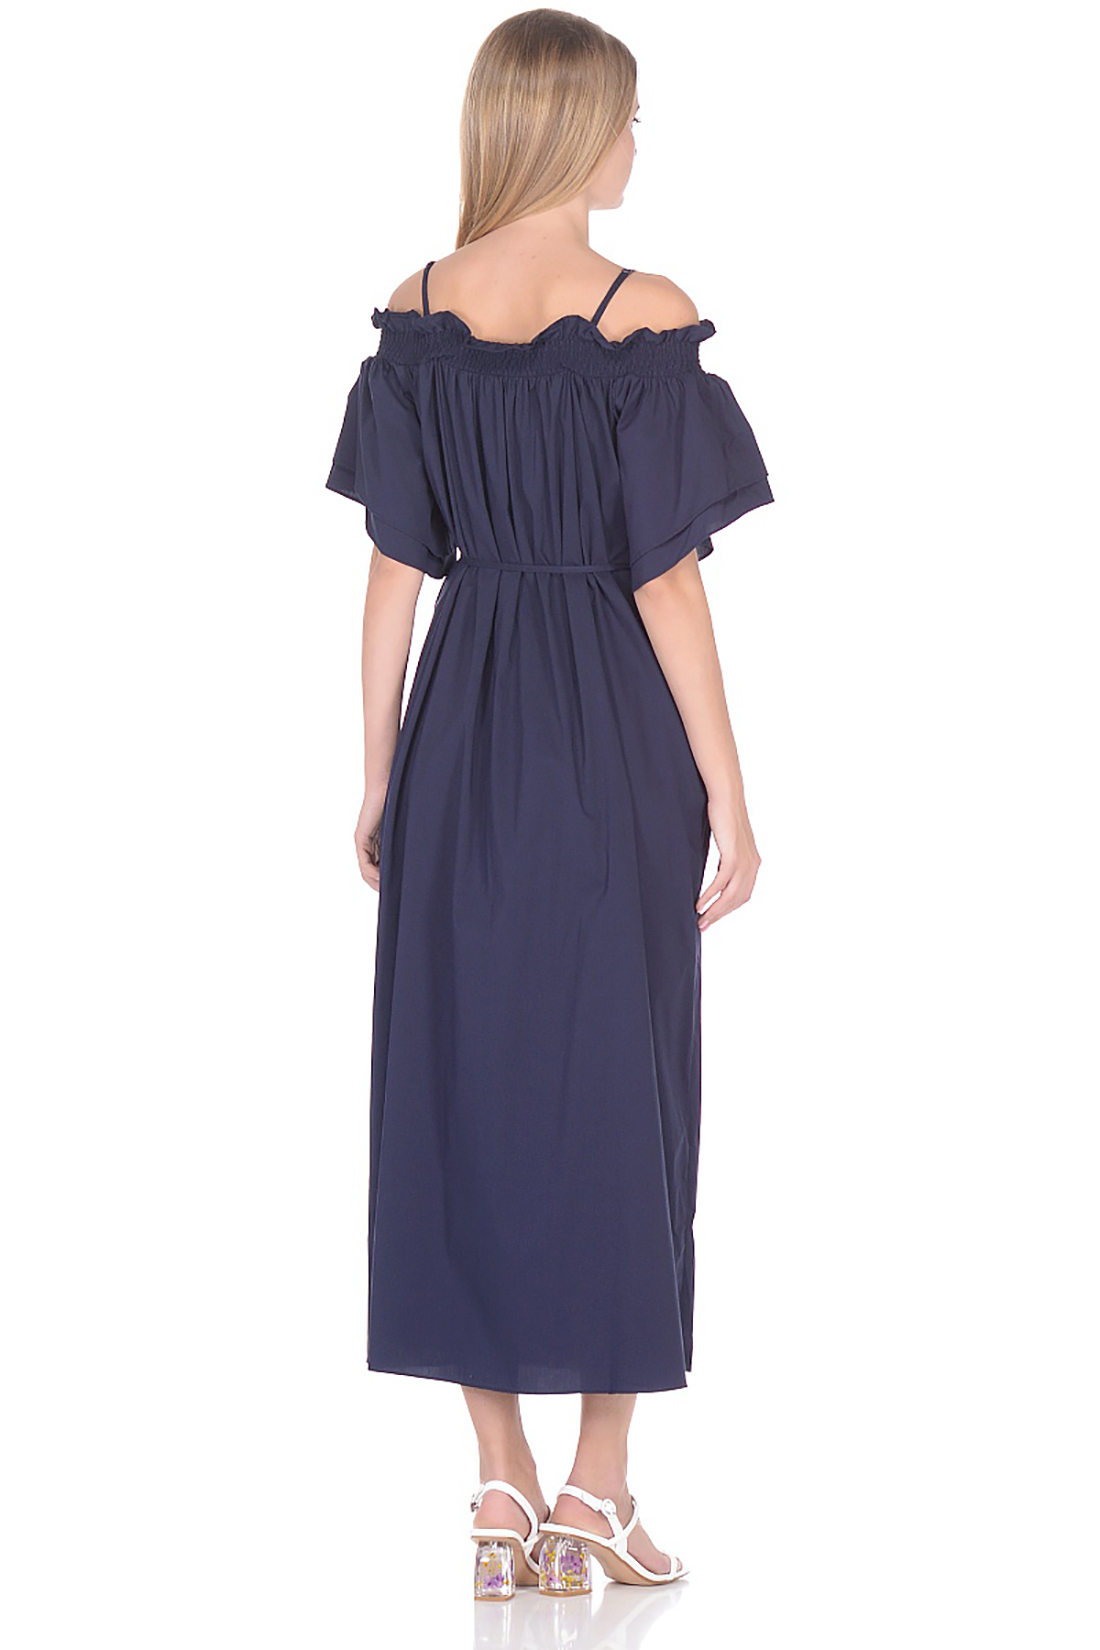 Платье-миди с открытыми плечами (арт. baon B458065), размер M, цвет синий Платье-миди с открытыми плечами (арт. baon B458065) - фото 2